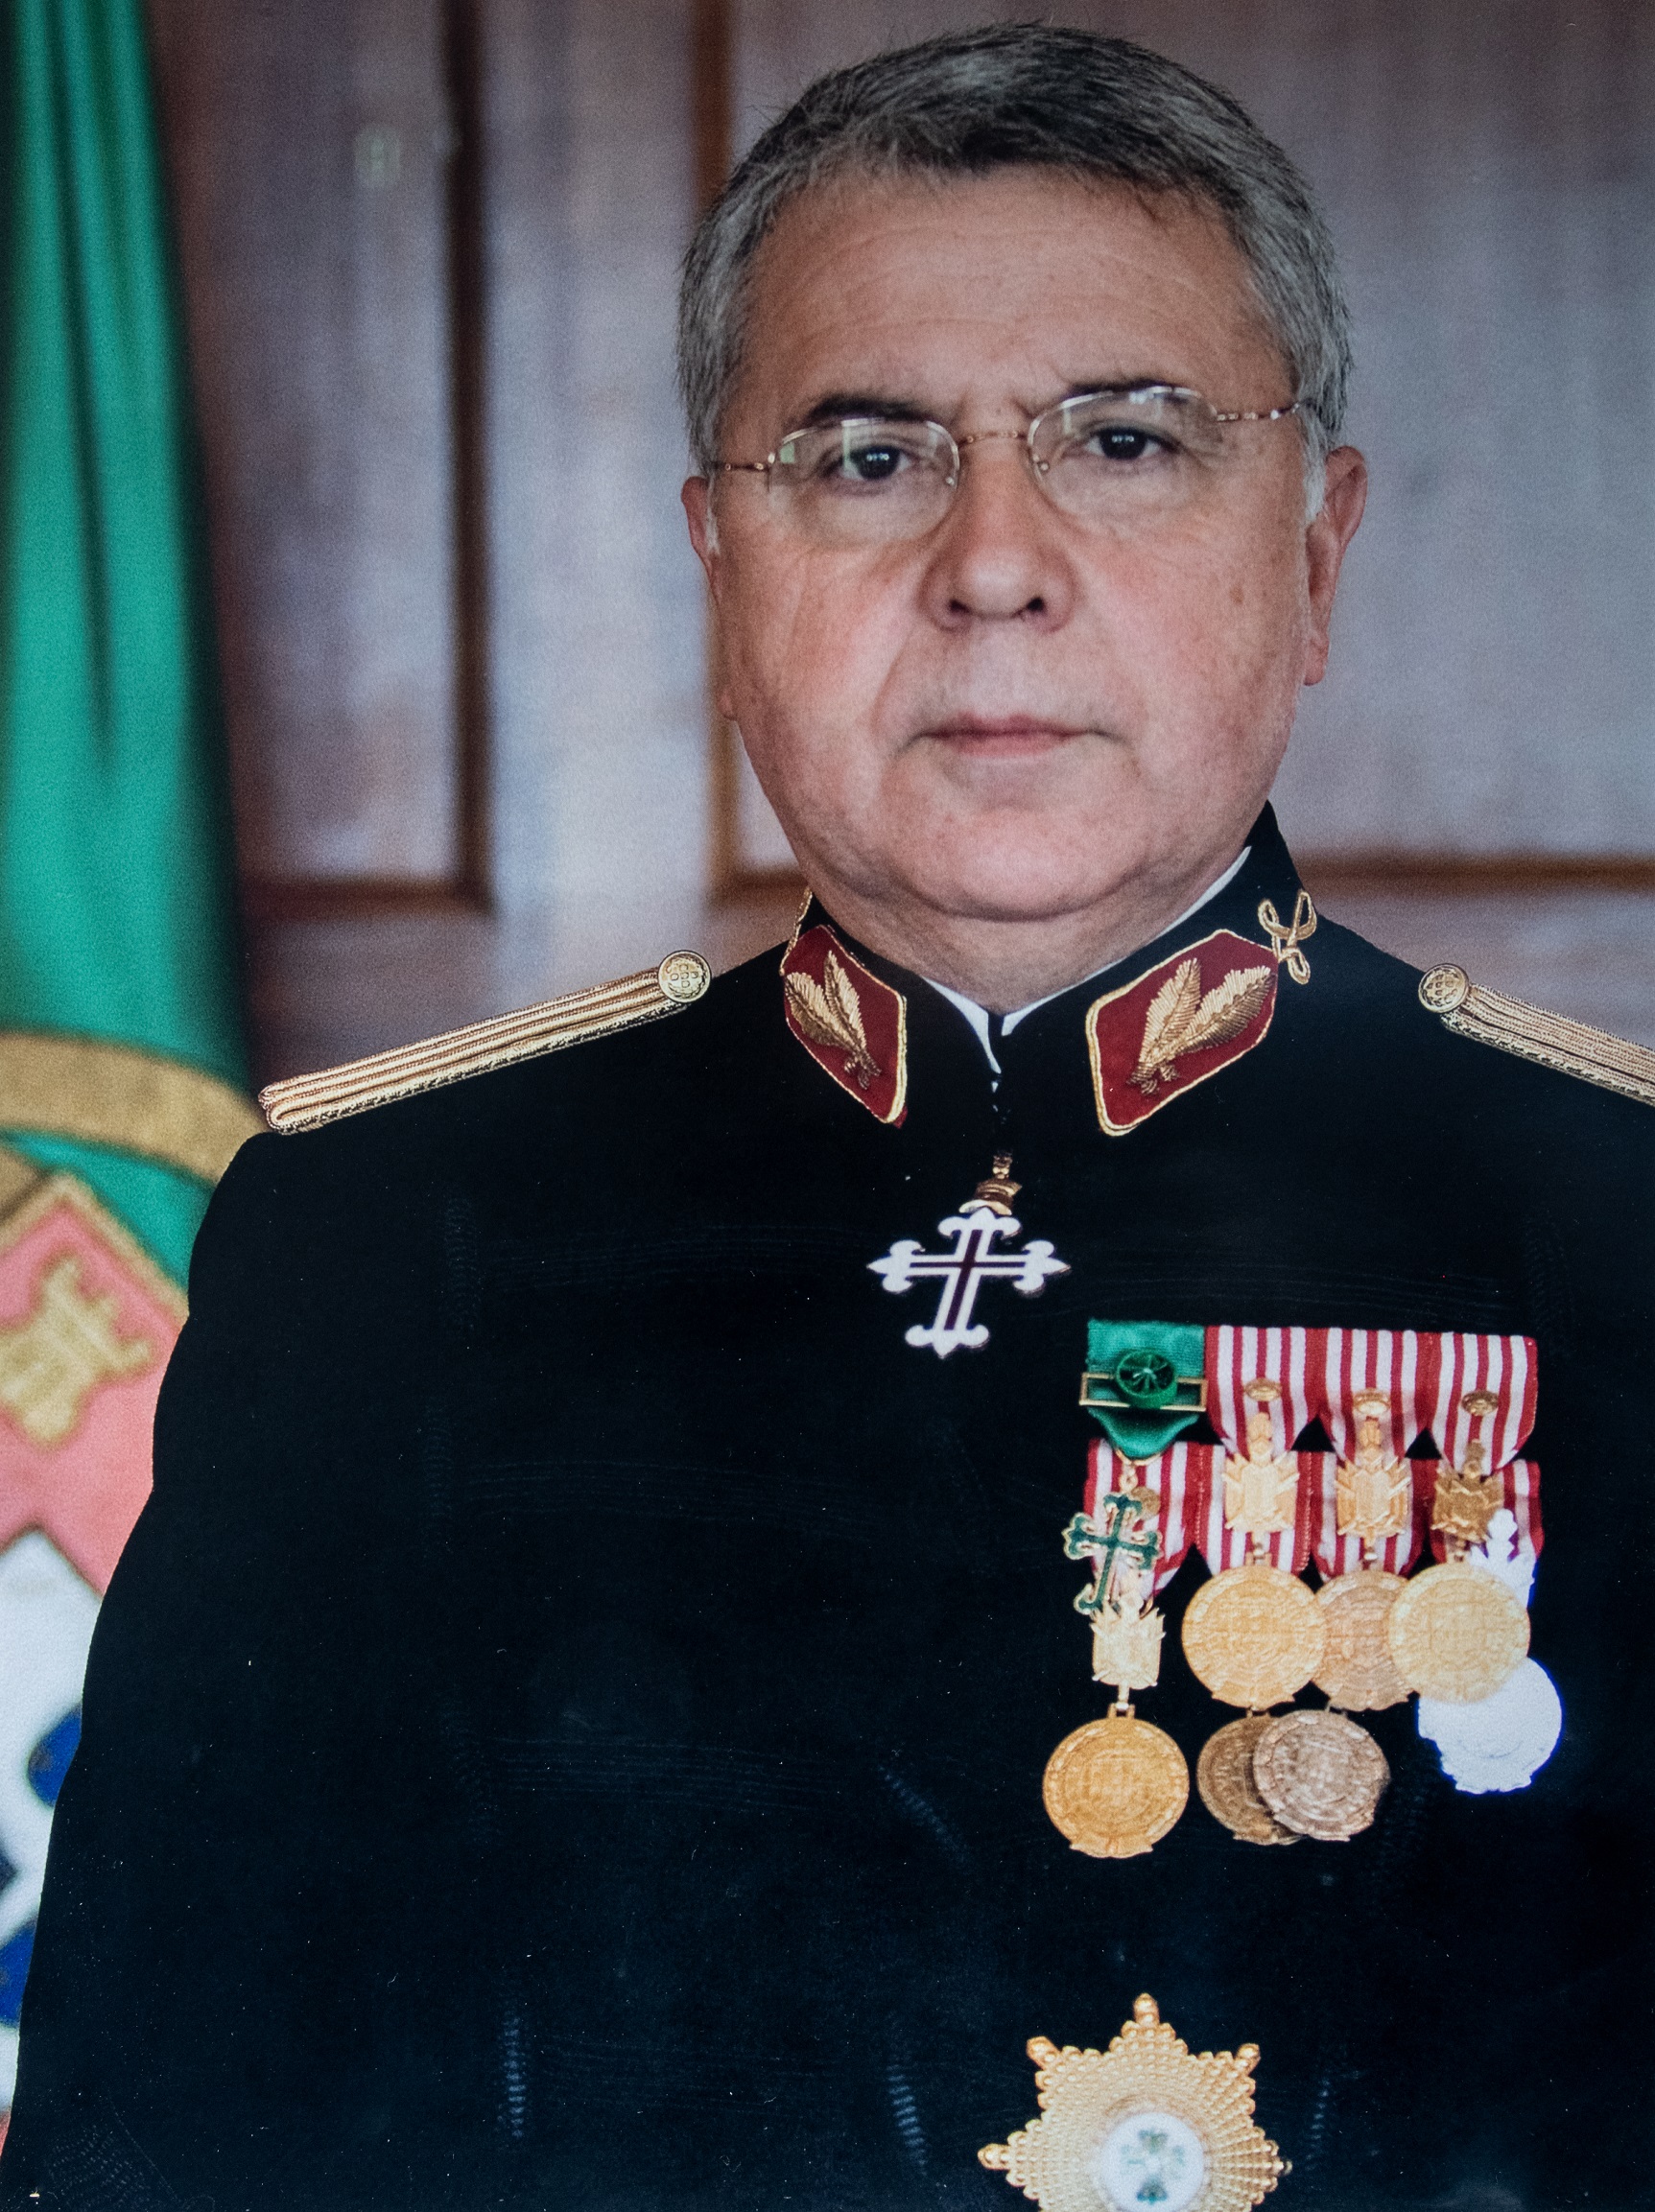 Fotografia do General Luís Vasco Valença Pinto